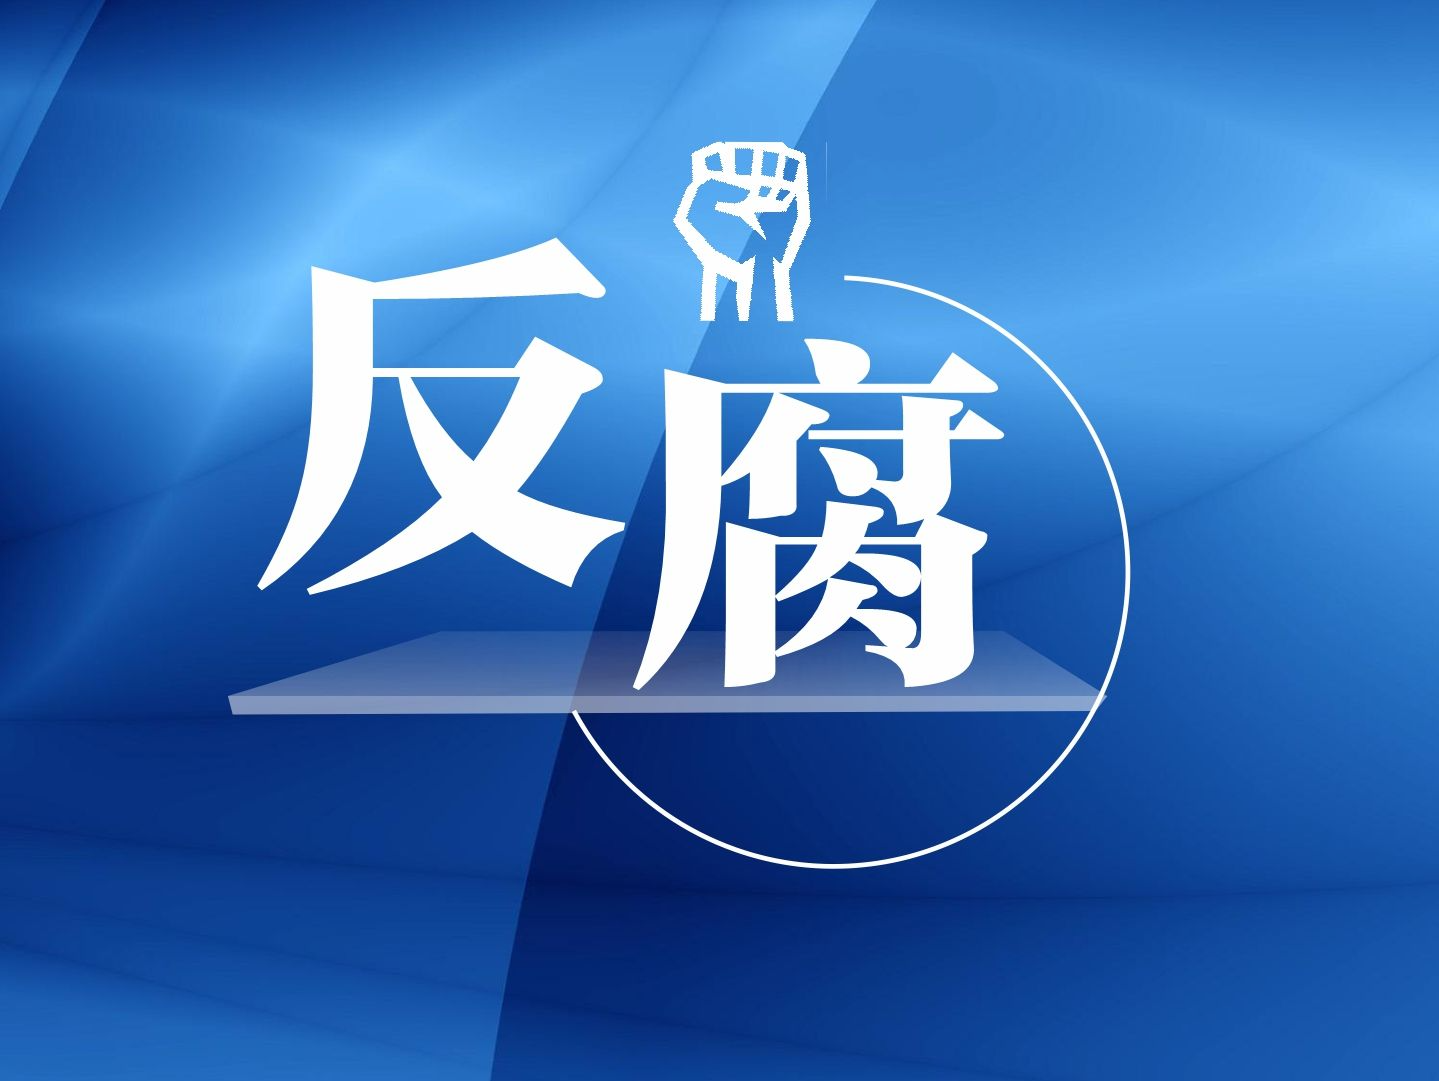 广东省人大常委会机关一级巡视员赖泽华接受纪律审查和监察调查